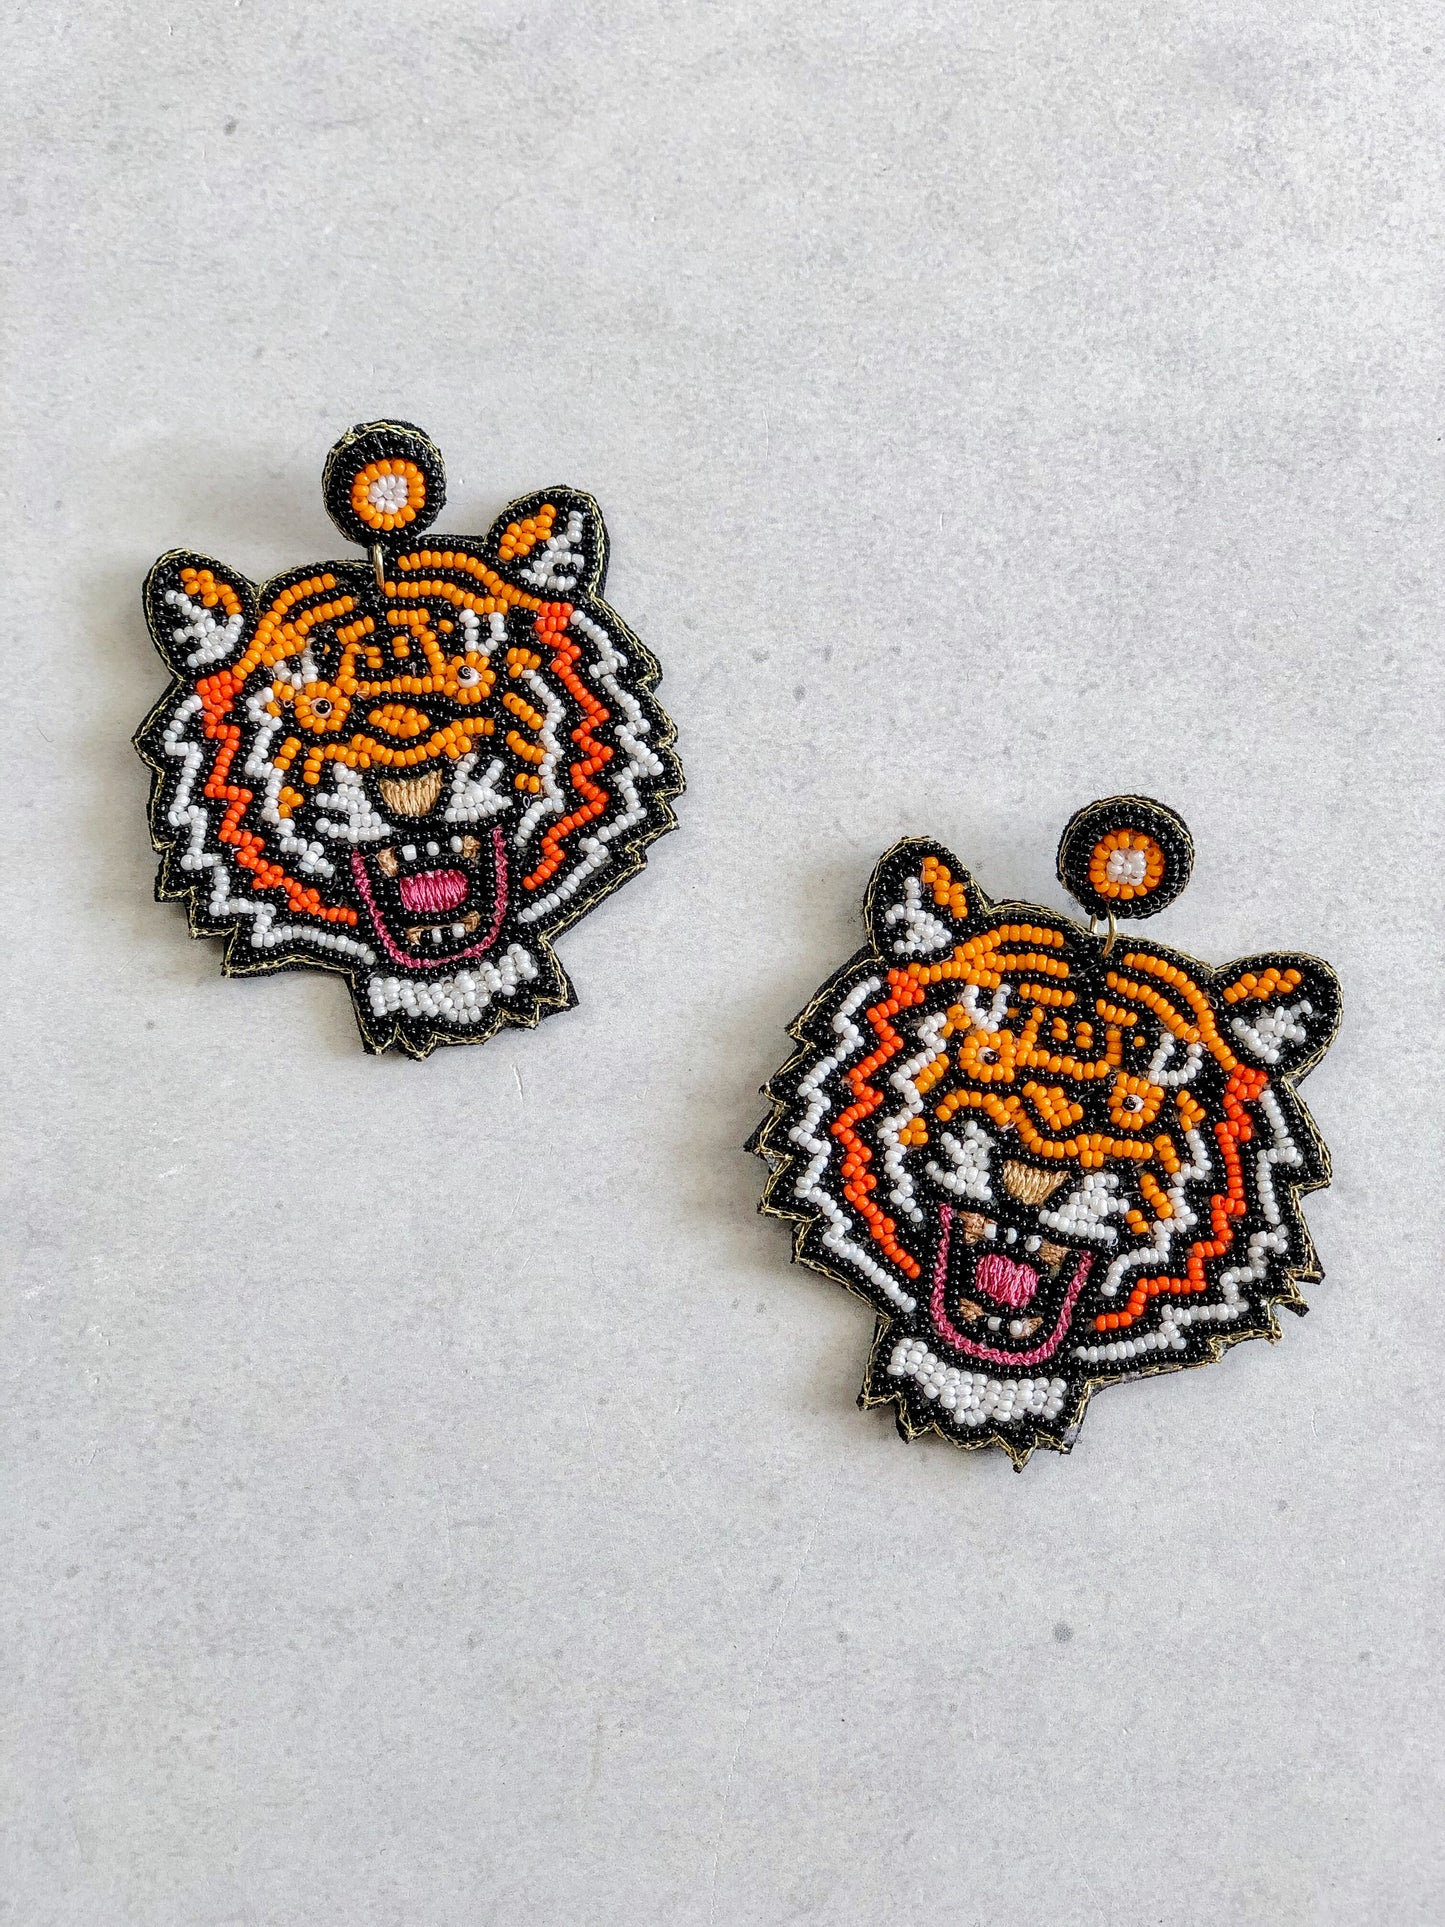 Tiger Dangle Earrings